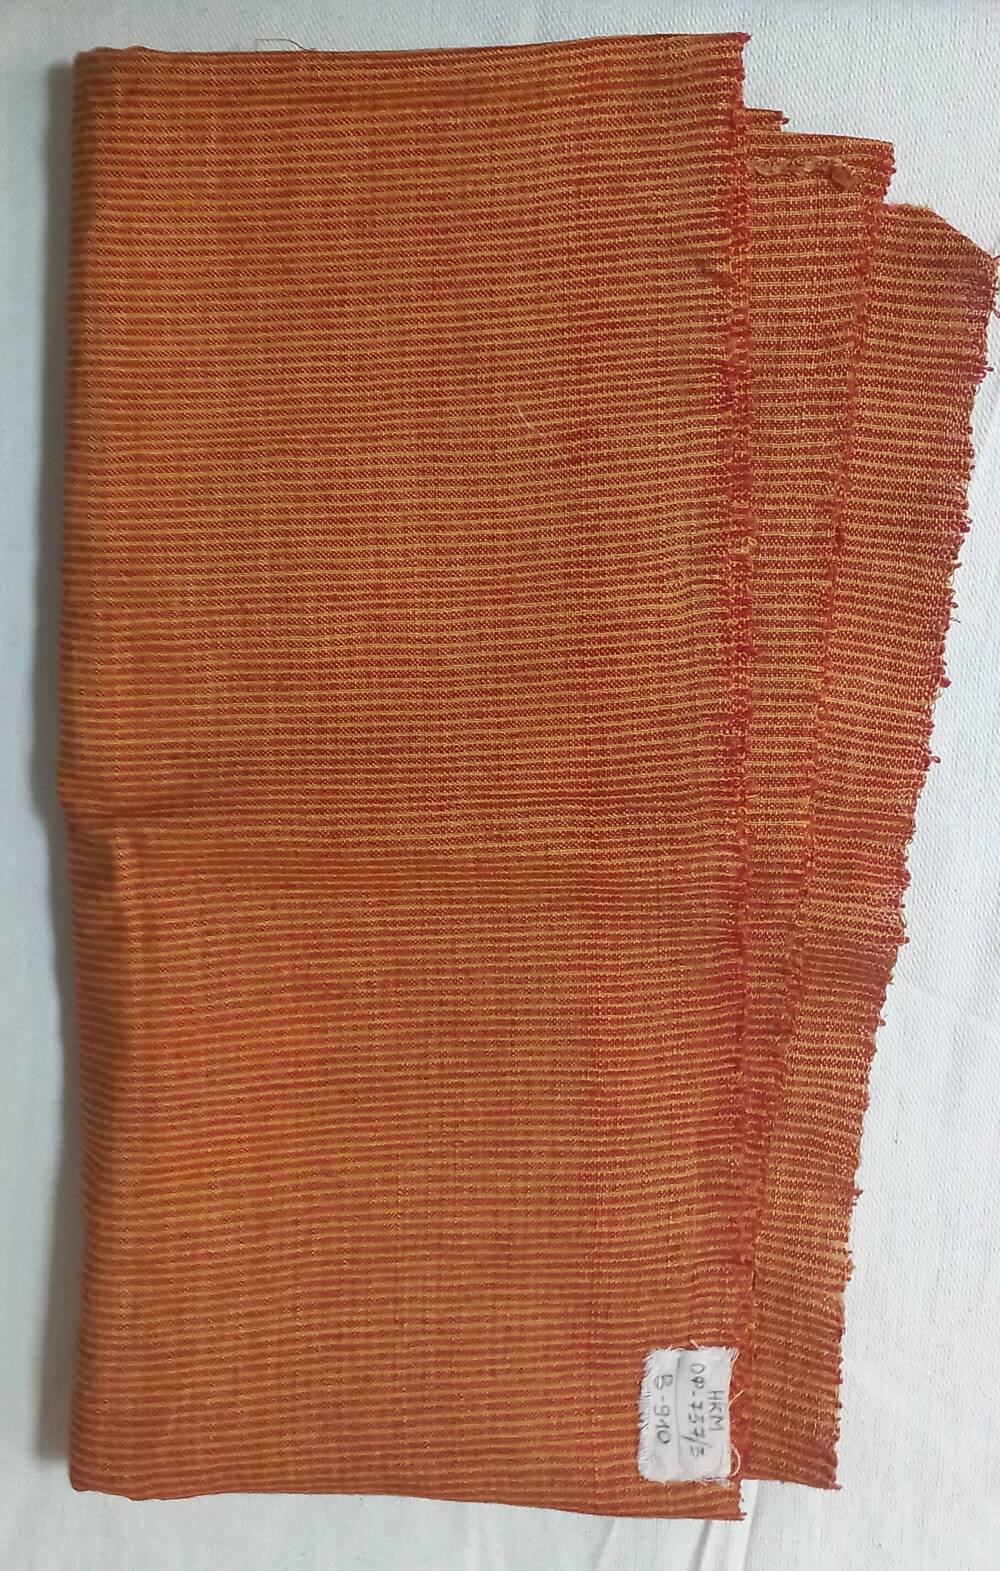 Ткань х/б, мелкая полоска оранжевого цвета